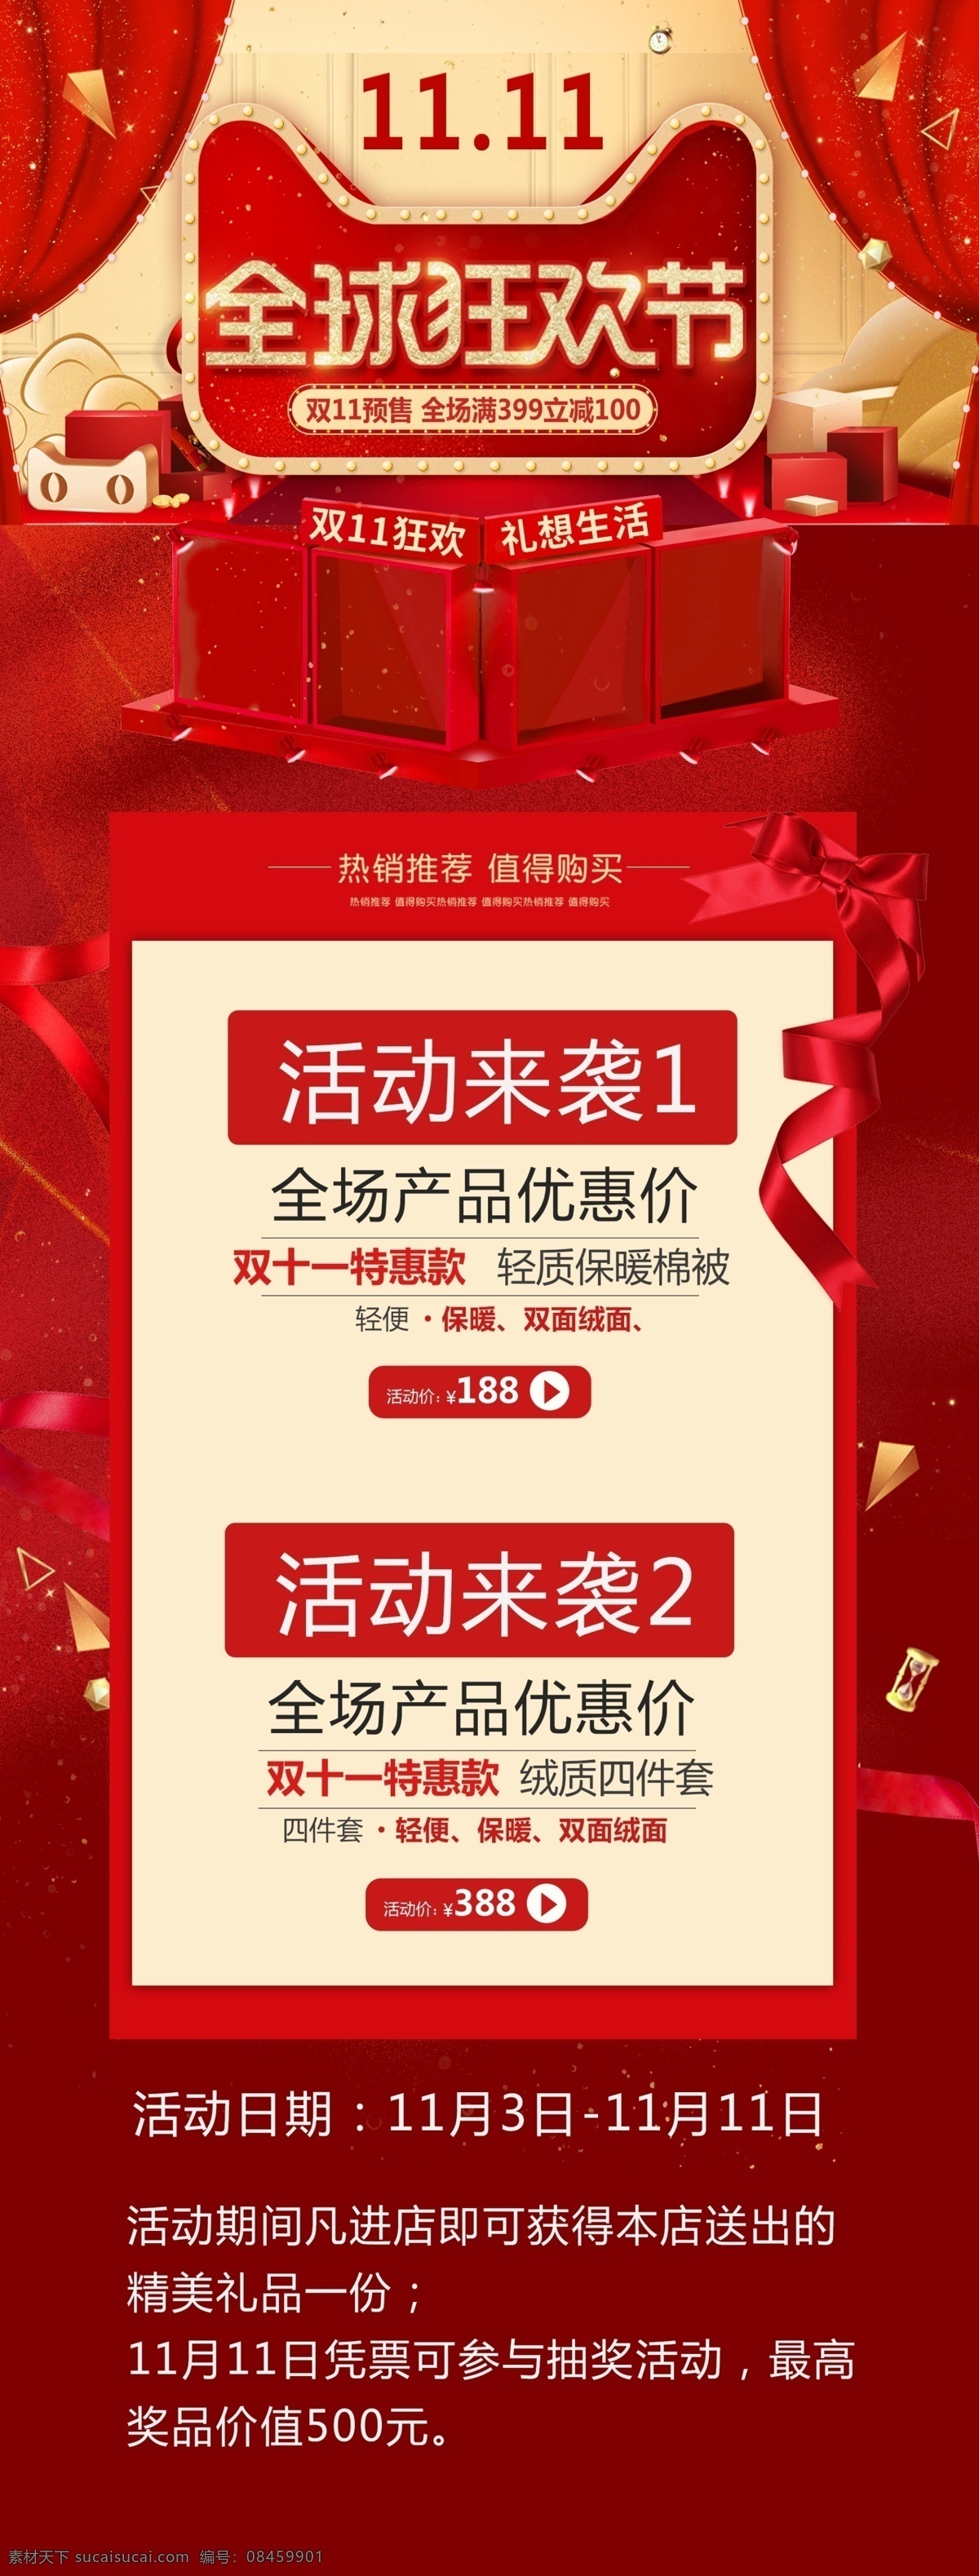 双十 促销 大 海报 双十一 电商 红色 淘宝 11.11 十一狂欢节 十一购物节 全球狂欢节